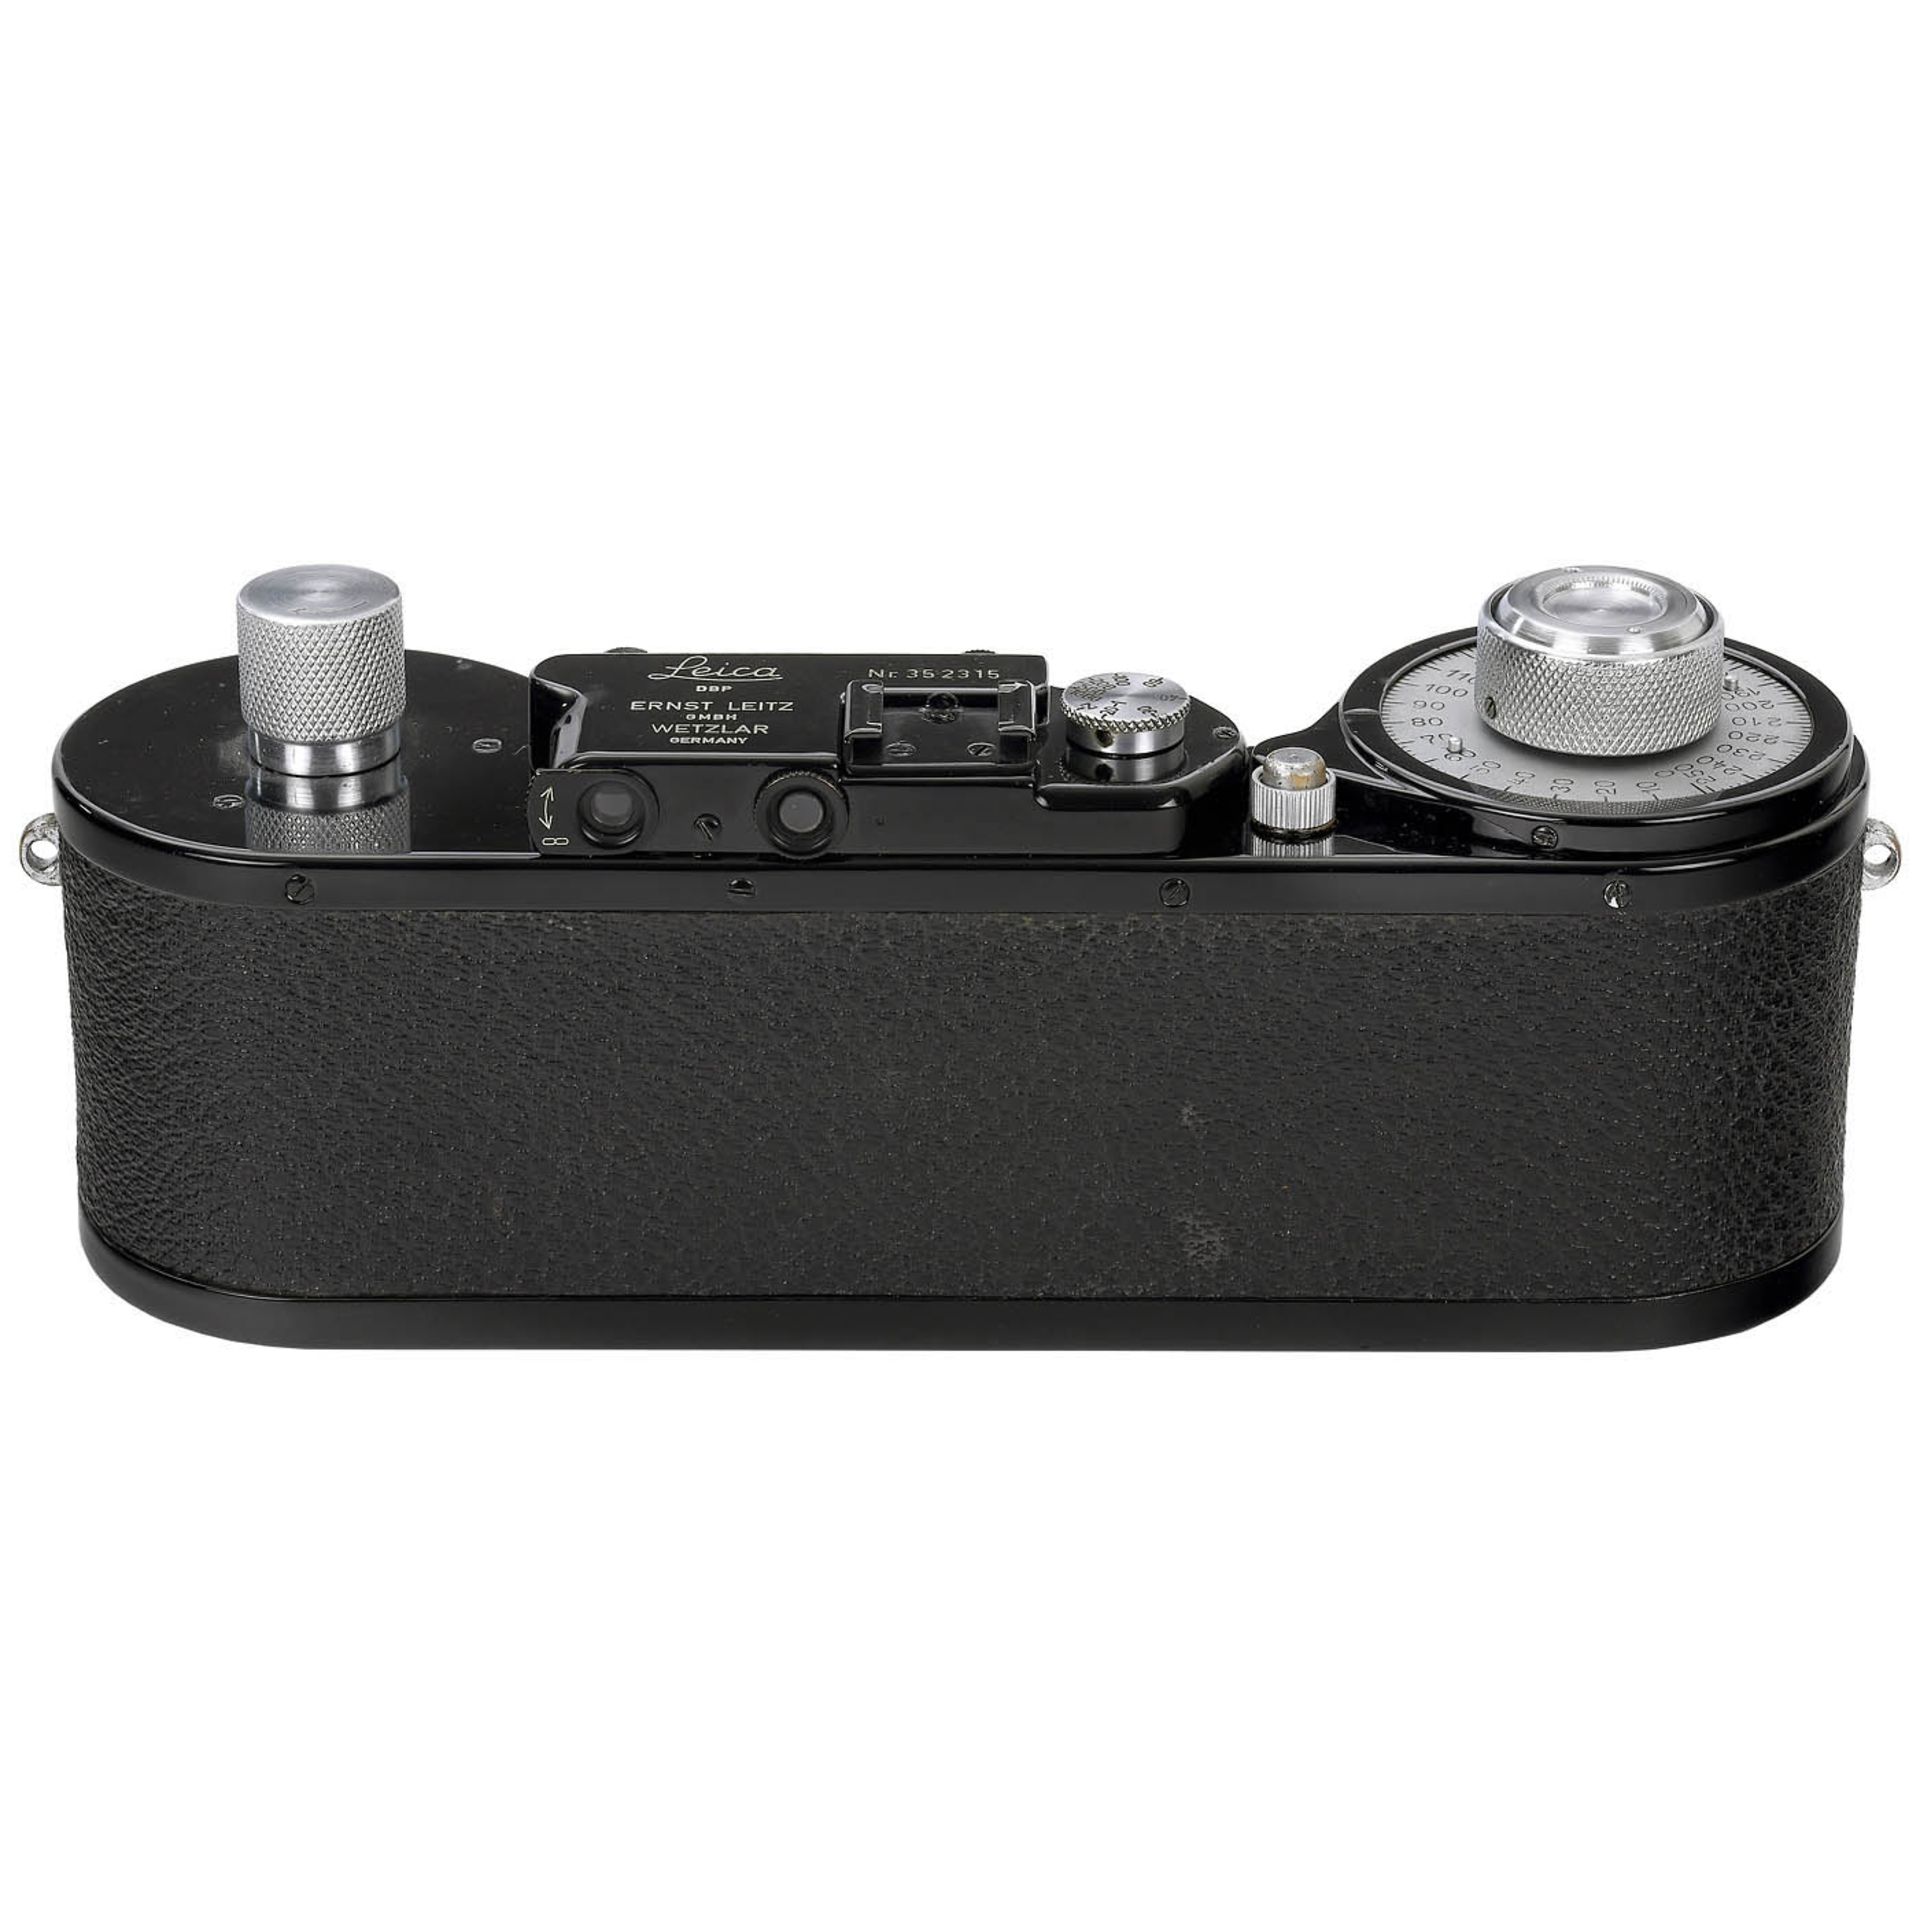 Leica 250 GG Reporter Camera, c. 1940 - Image 4 of 7